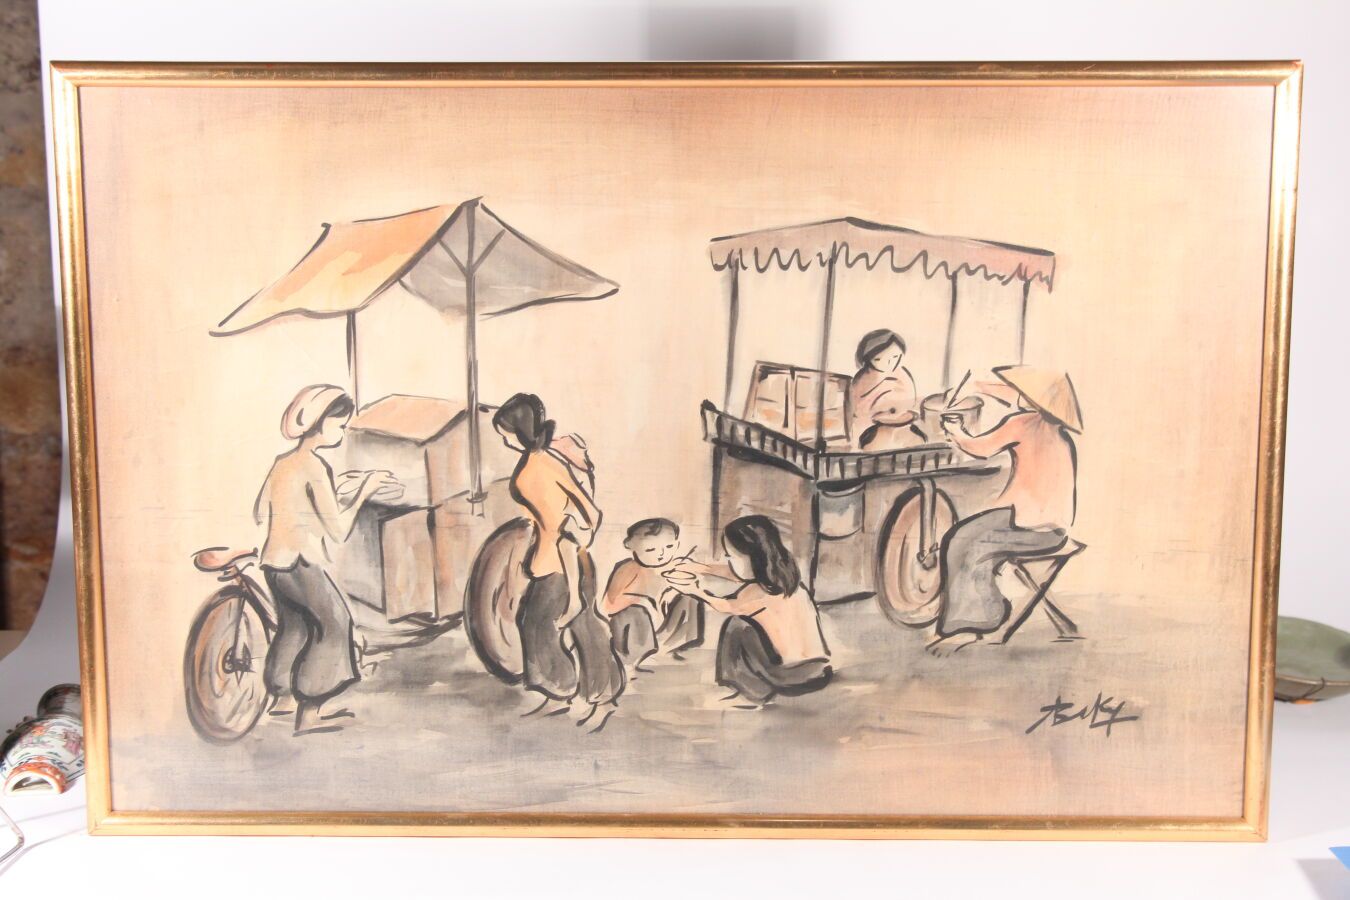 Null Vietnam, siglo XX
Dos pinturas a tinta y gouache sobre seda
Una representa &hellip;